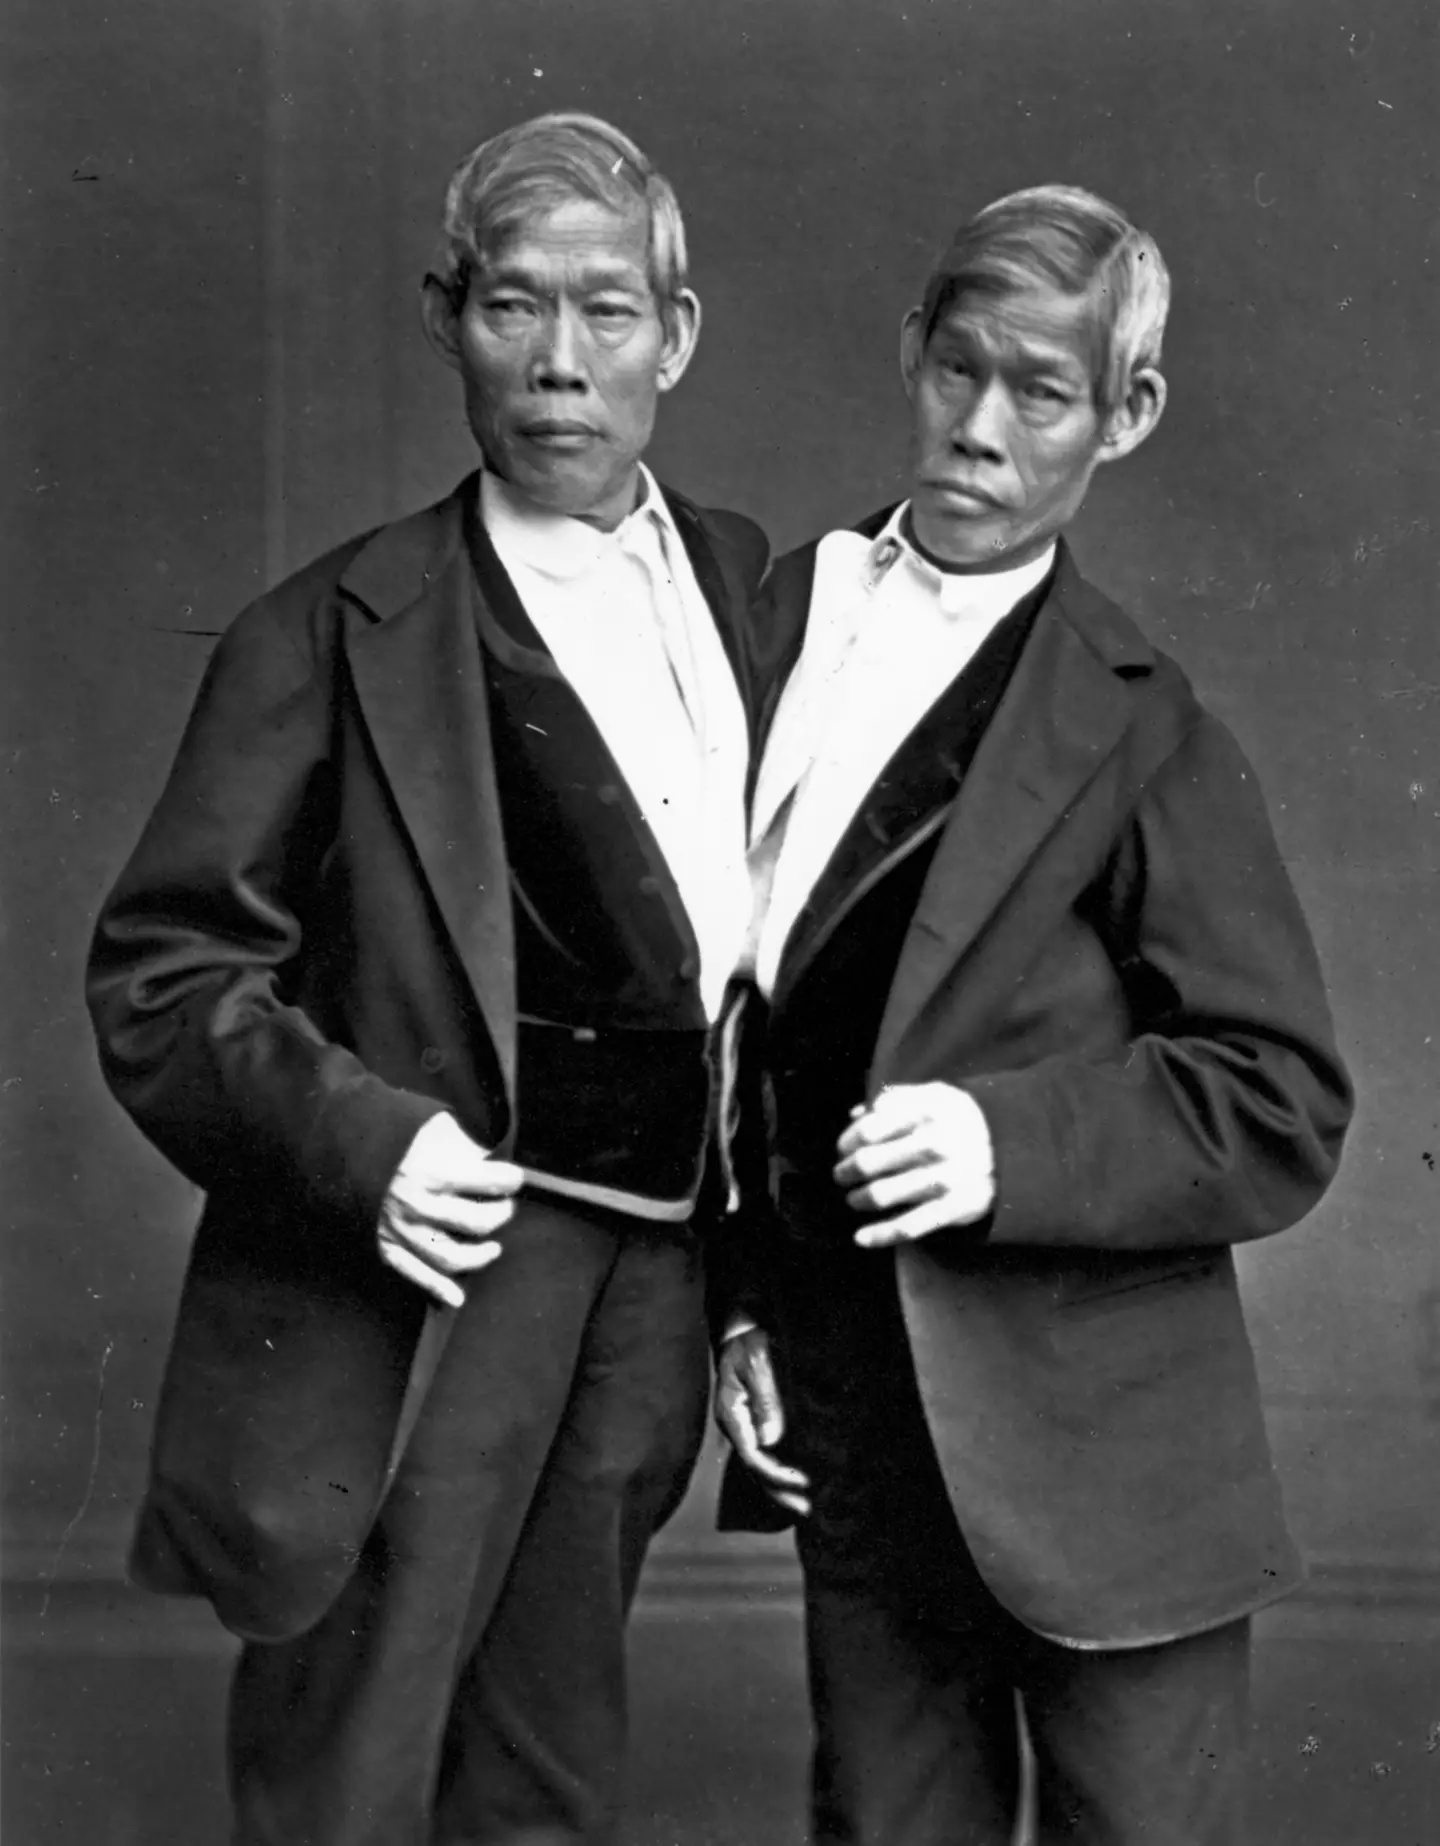 Gêmeos siameses mundialmente famosos tiveram 21 filhos durante sua vida